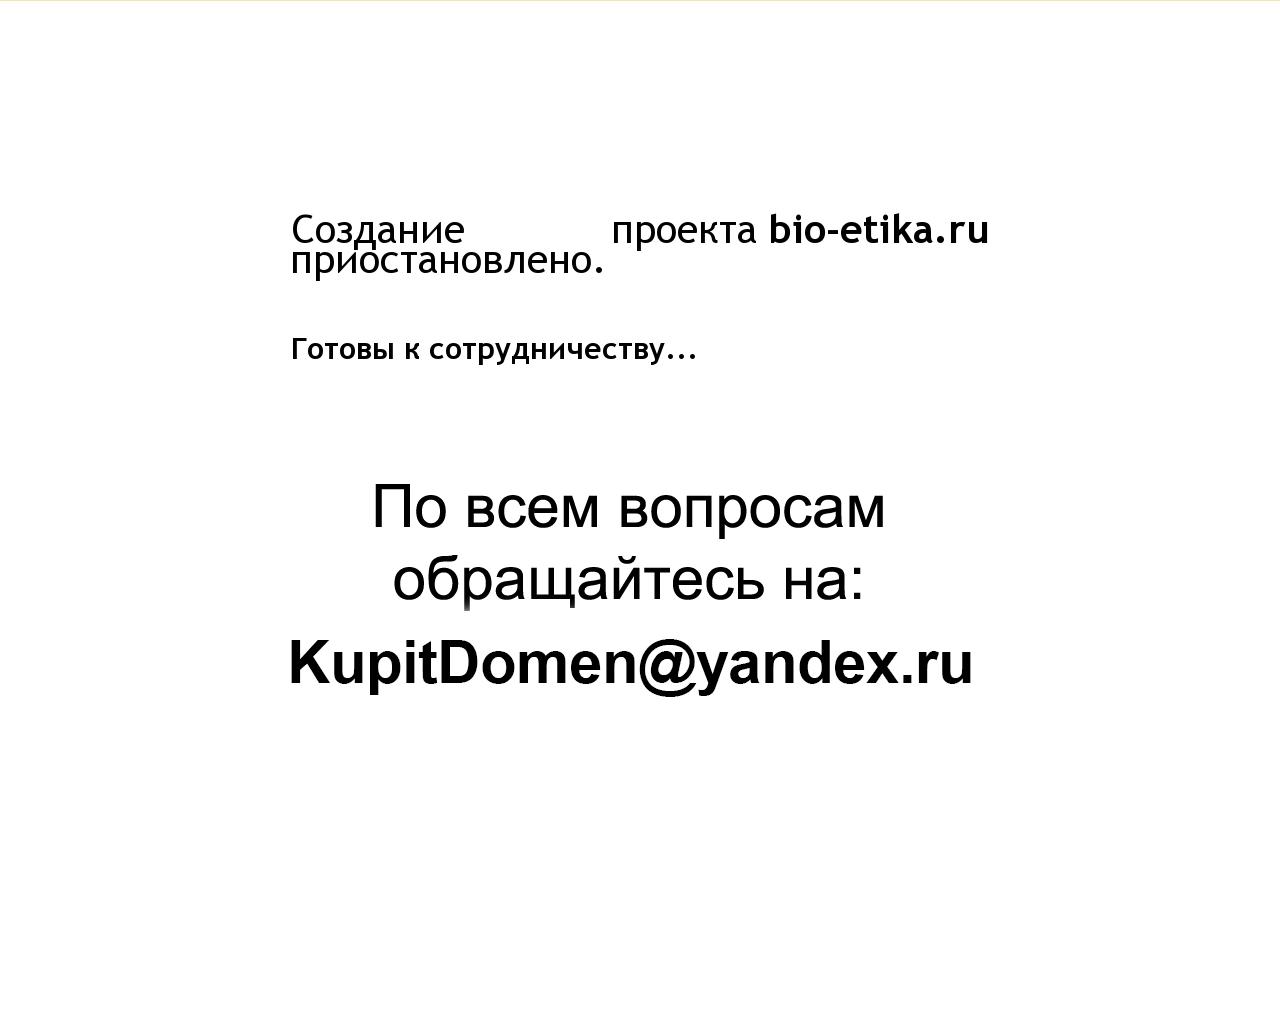 Изображение сайта bio-etika.ru в разрешении 1280x1024